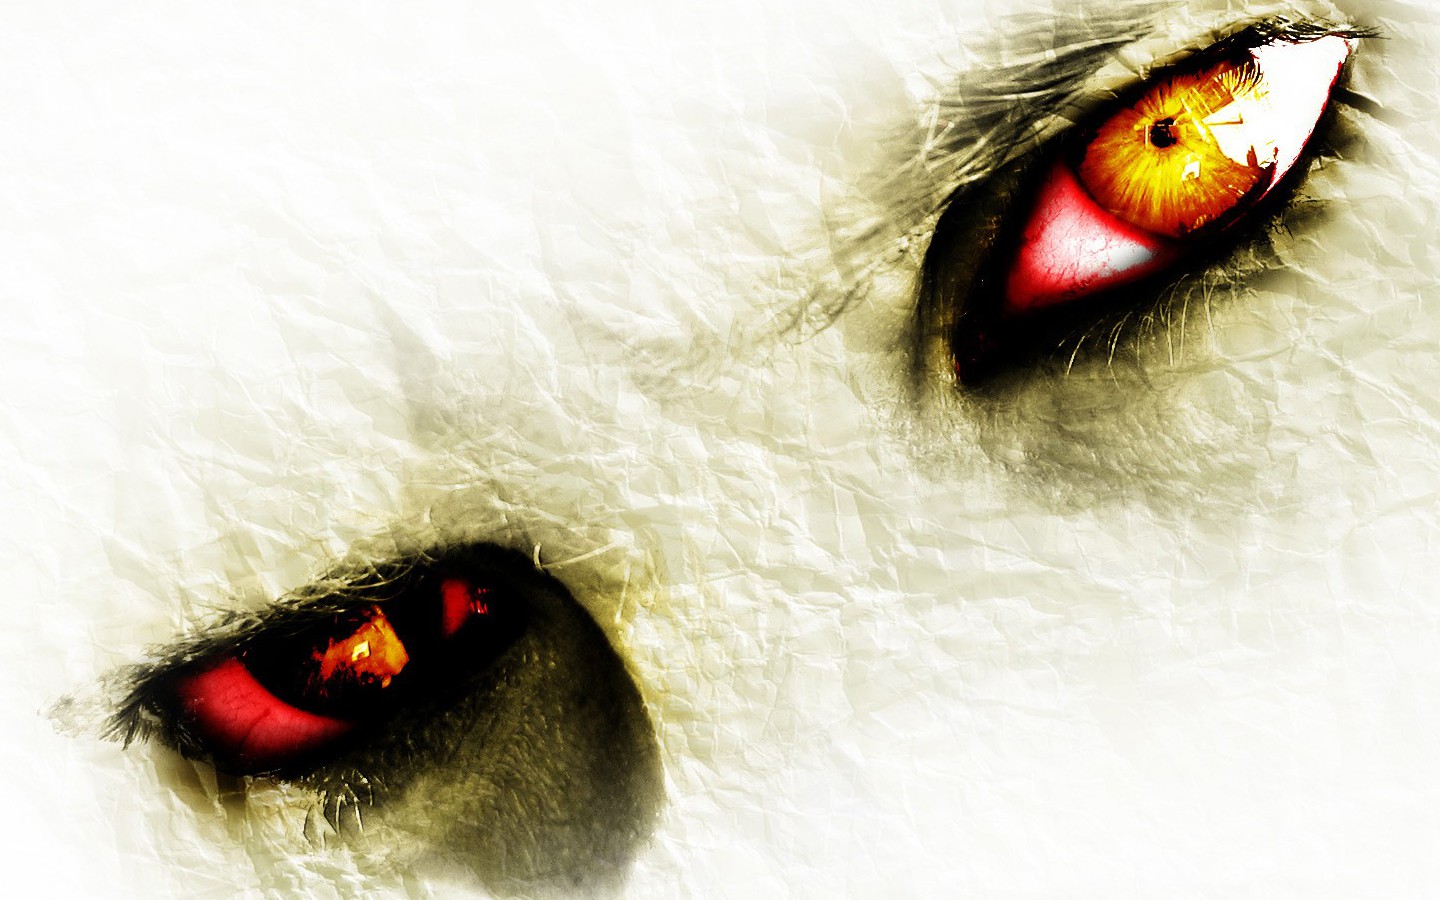 Horror evil eyes in fear Wallpapers 1440x900 PIXHOME